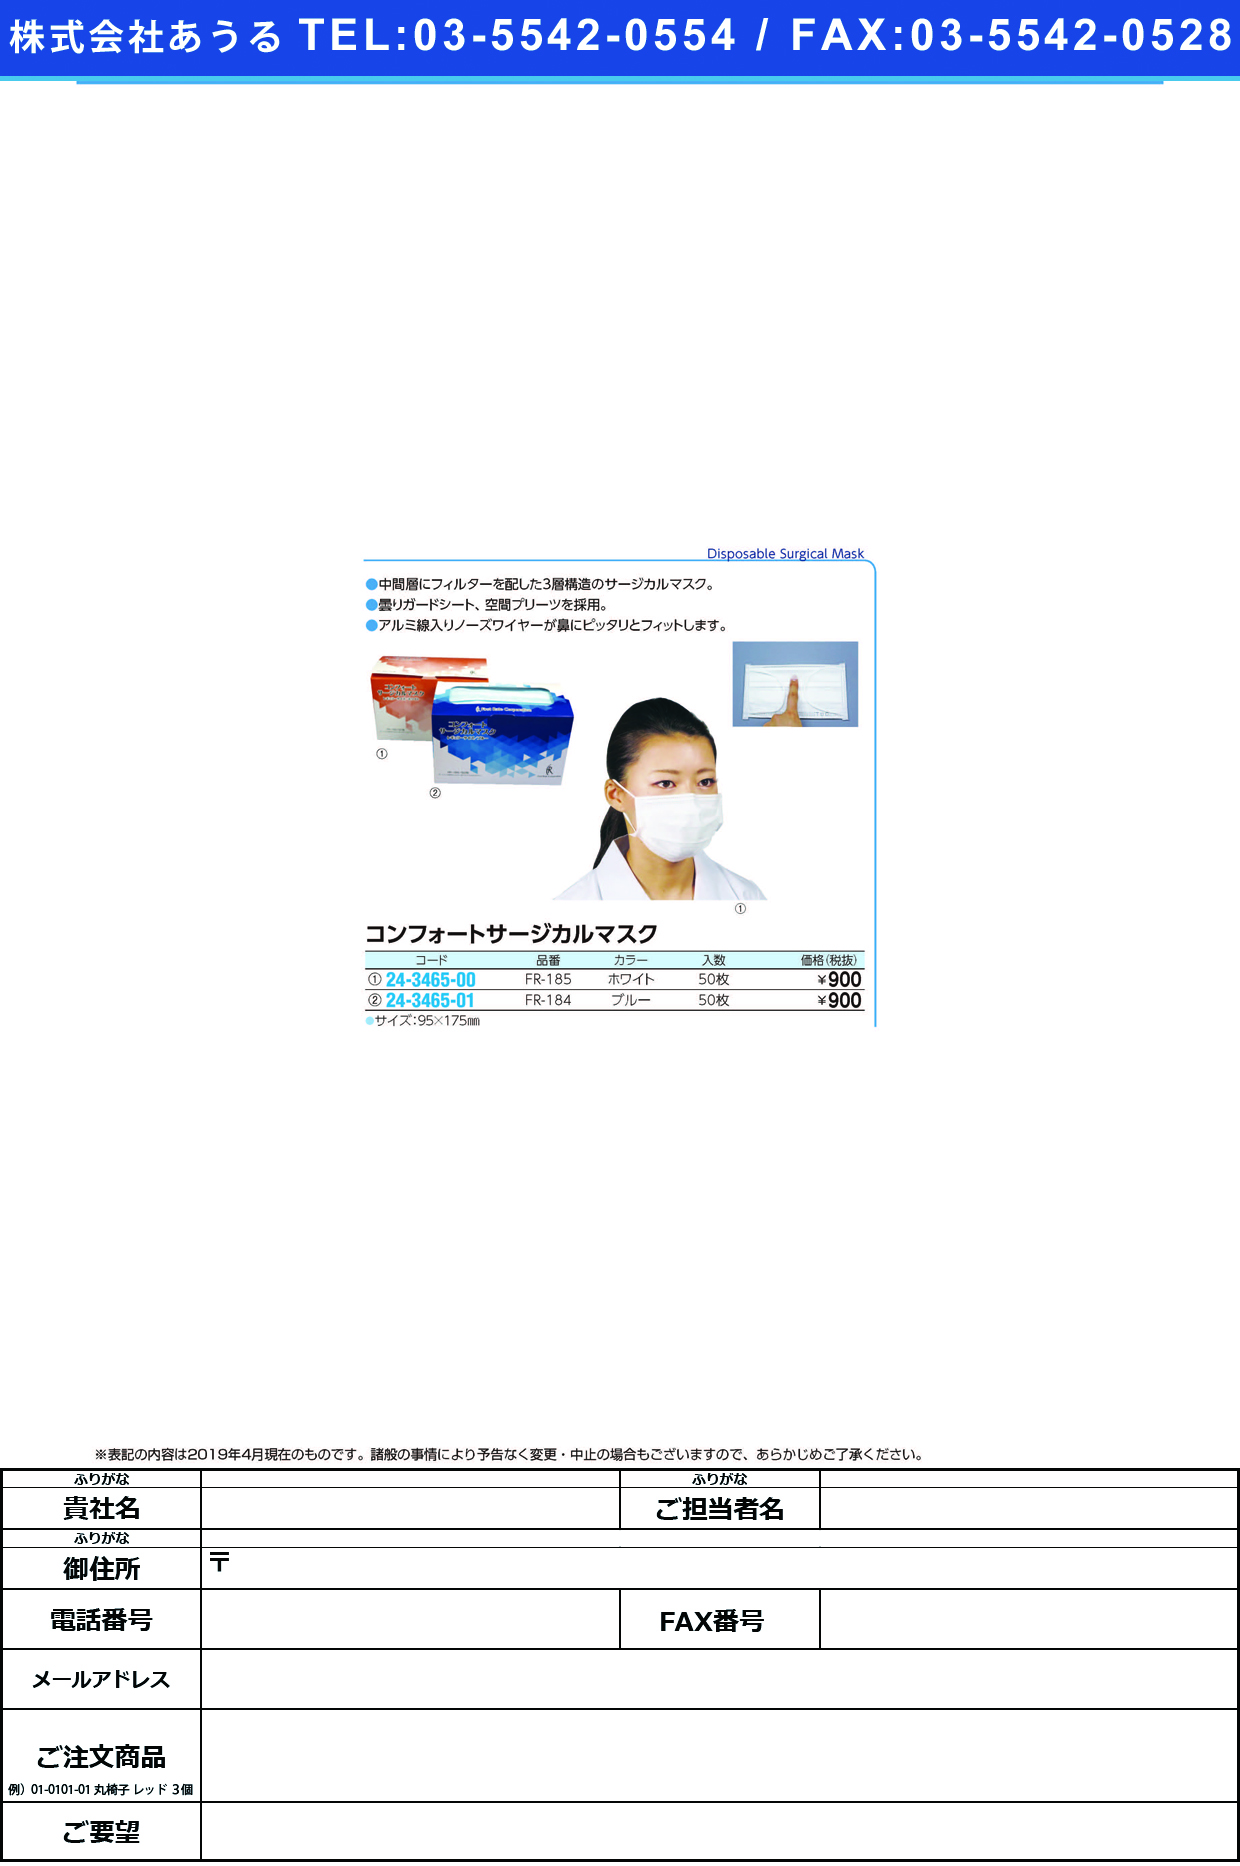 コンフォートサージカルマスク FR-184(ﾌﾞﾙｰ)50ﾏｲ ｺﾝﾌｫｰﾄｻｰｼﾞｶﾙﾏｽｸ(ファーストレイト)